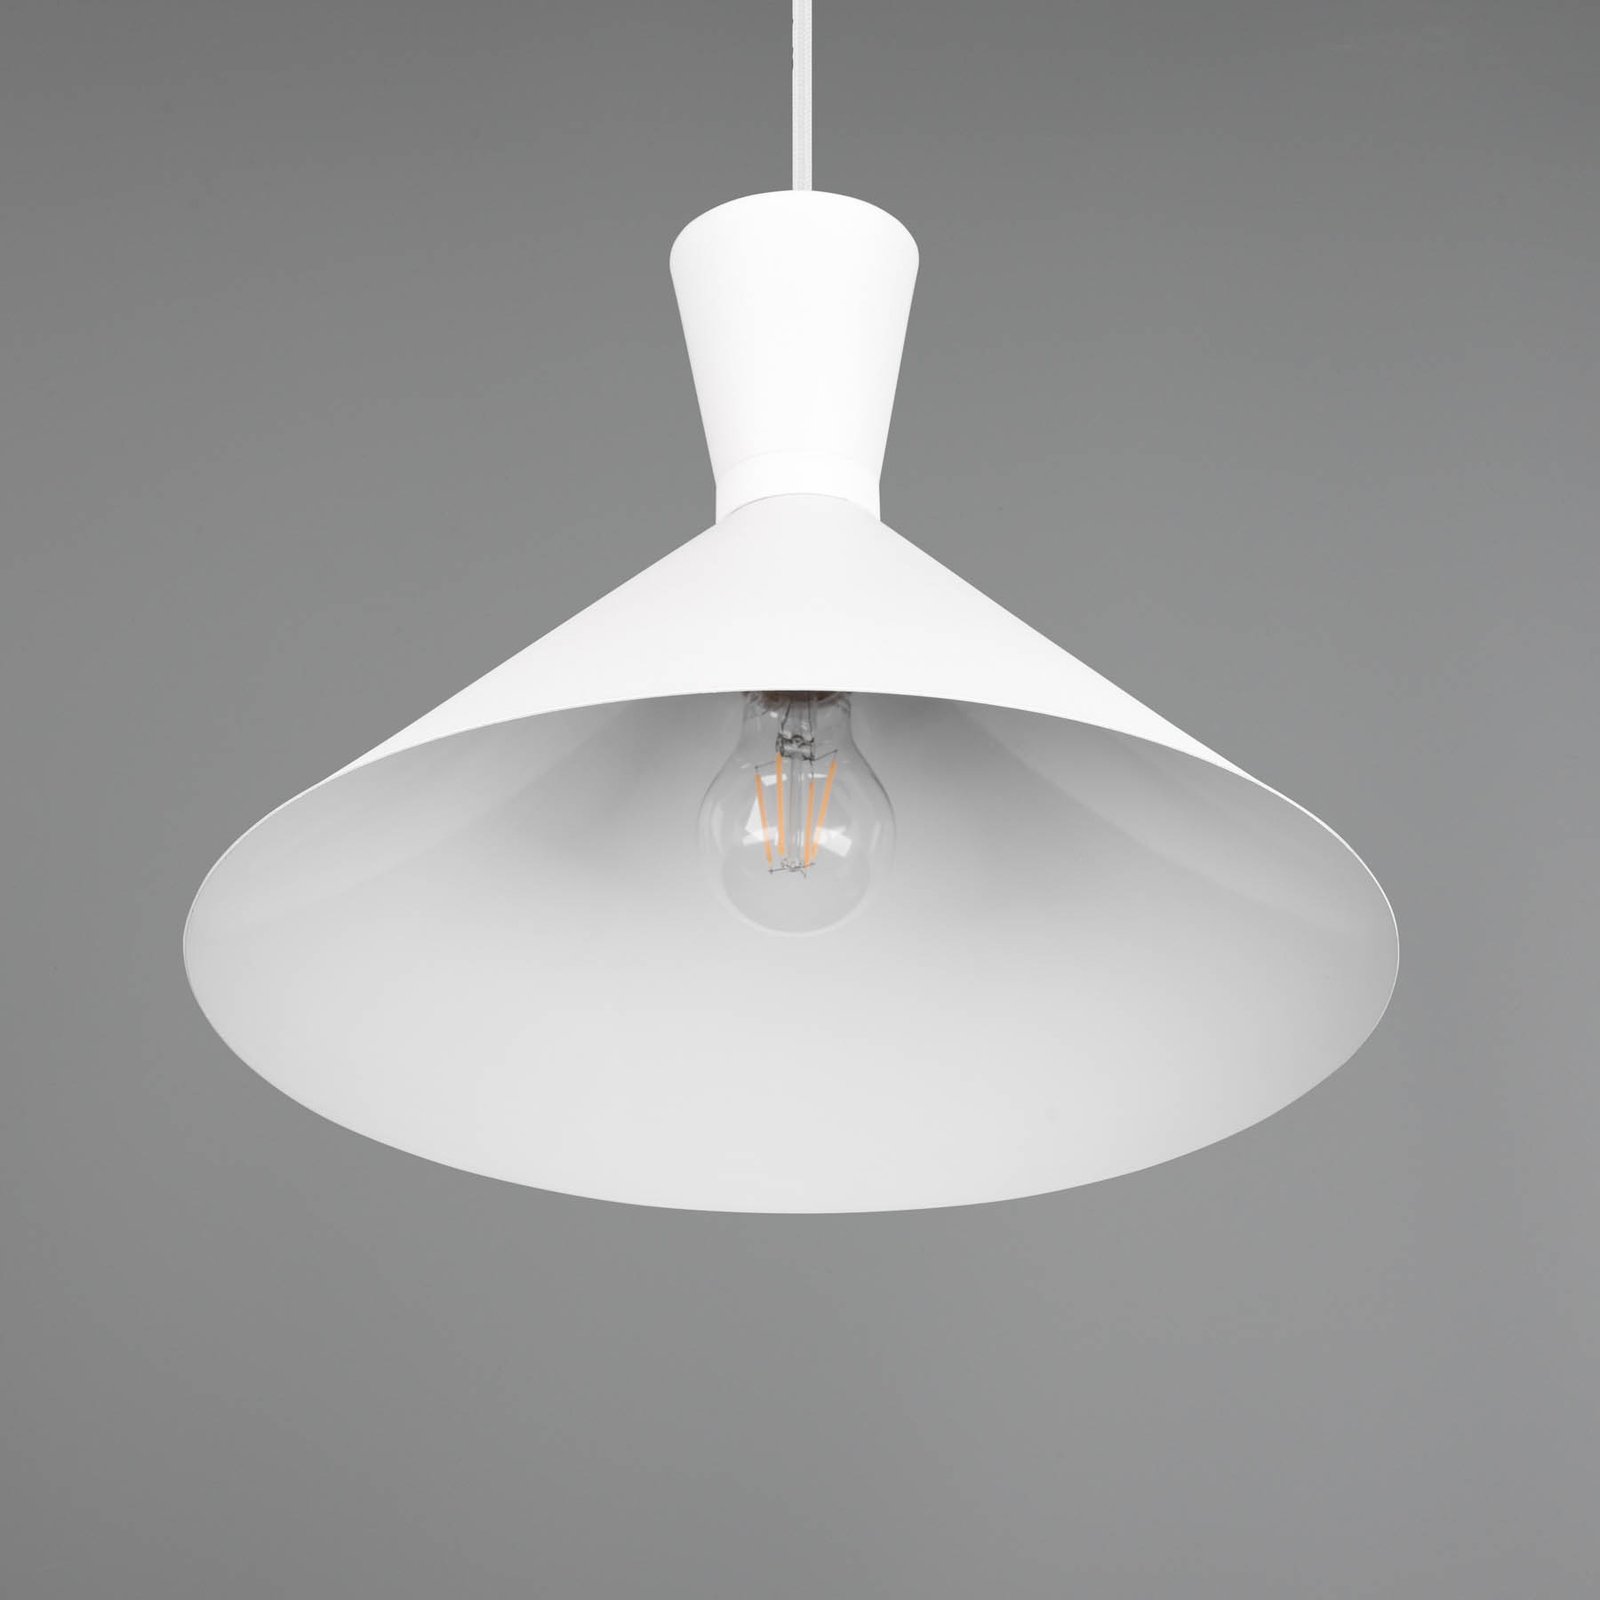 Enzo pendant light, one-bulb, Ø 35 cm, white